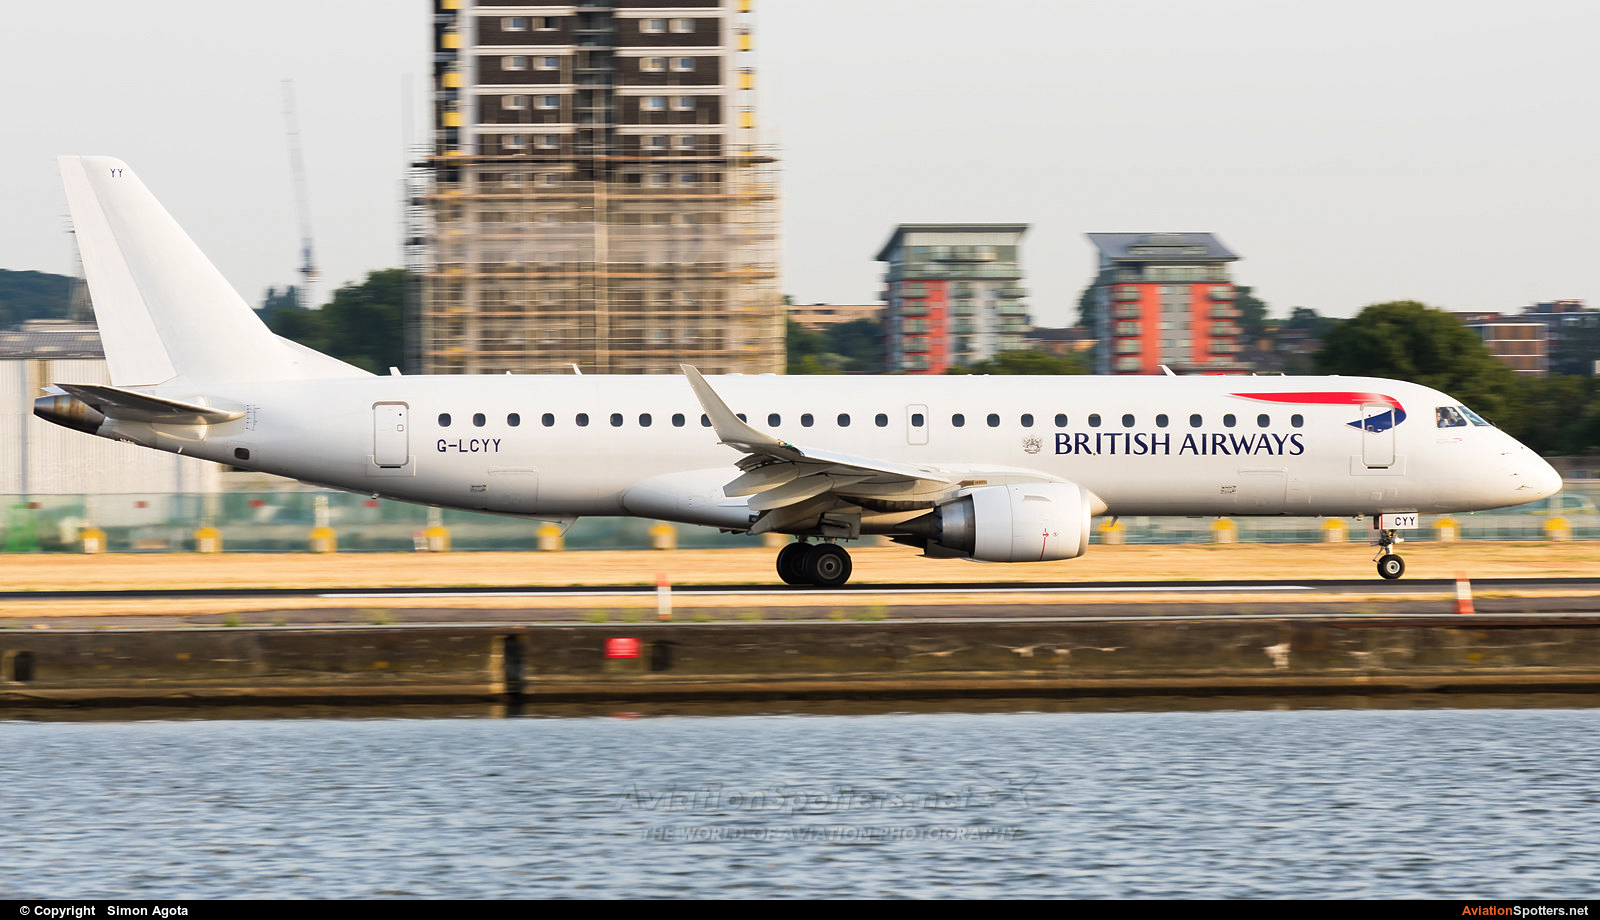 British Airways - City Flyer  -  190  (G-LCYY) By Simon Agota (goti80)